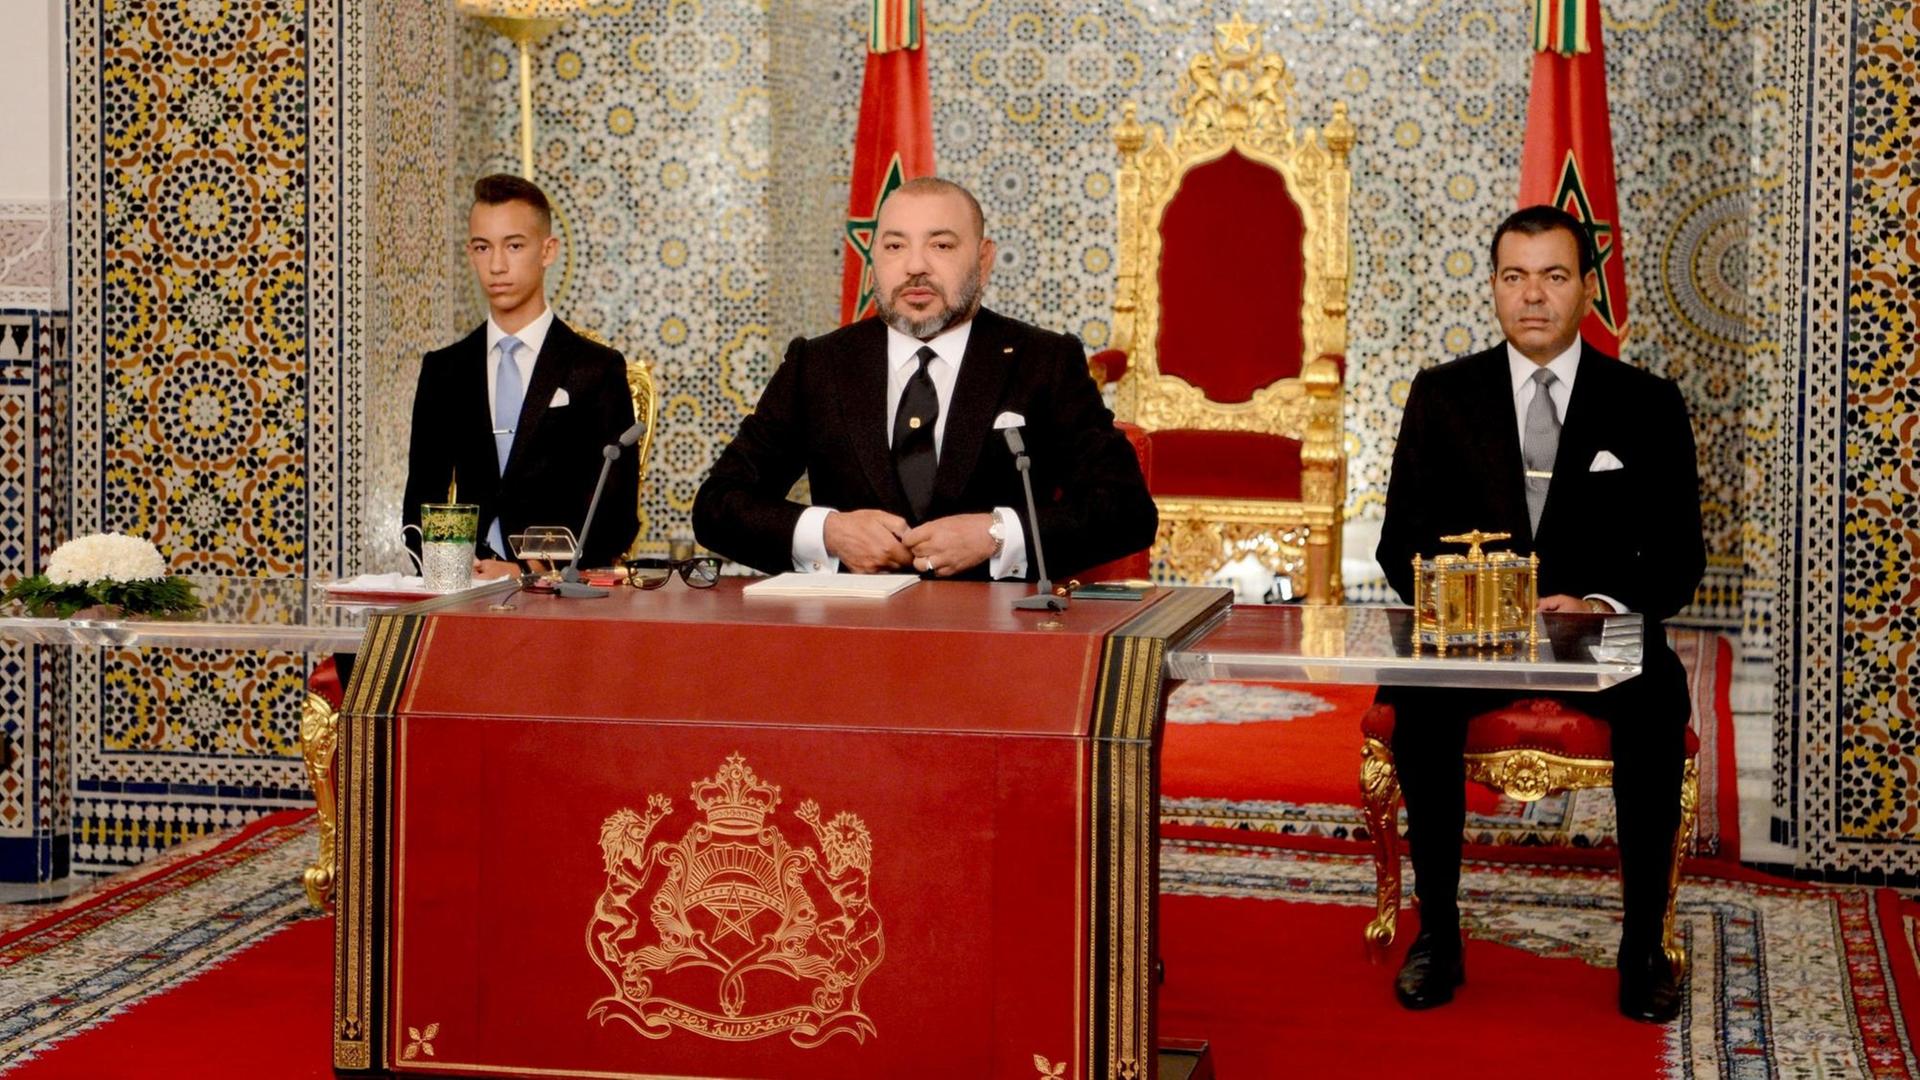 König Mohammed VI. von Marokko neben seinem Bruder (recht) und seinem Sohn (links)